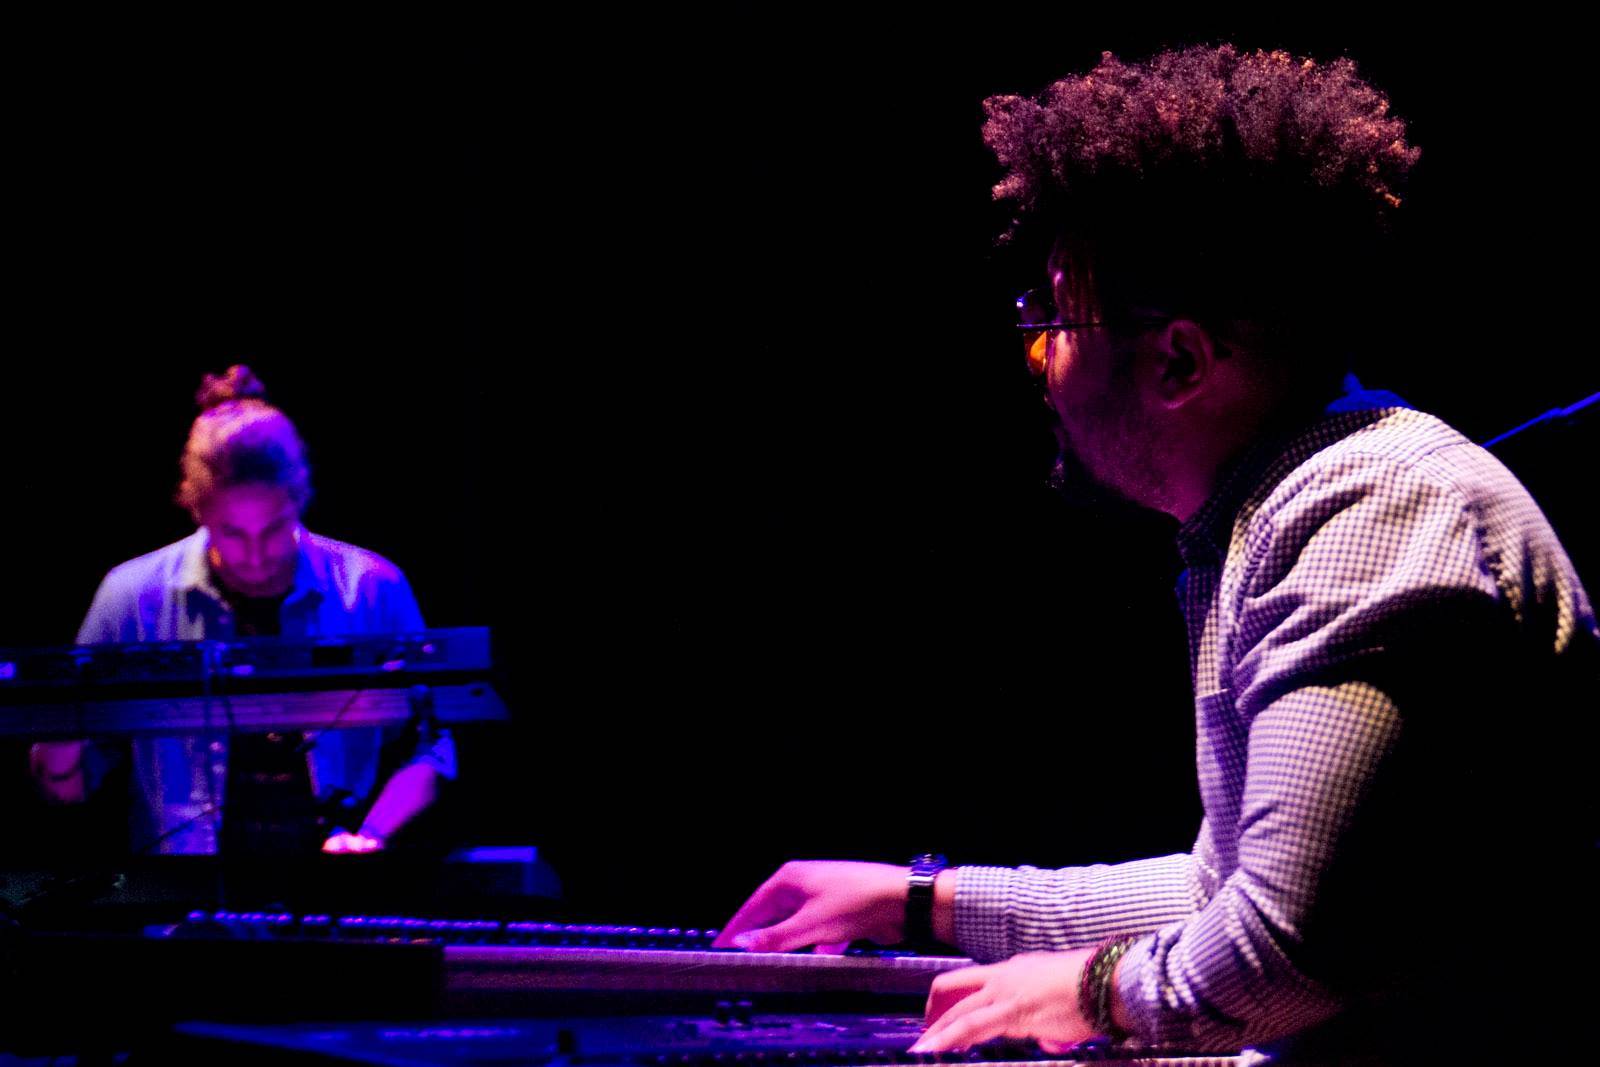 El pianista Jorge Luis "Yoyi" Lagarza fue el único invitado en el concierto de Héctor Téllez Jr. en el teatro del Museo Nacional de Bellas Artes, La Habana, 3 de noviembre de 2018. Foto: Abel Carmenate.